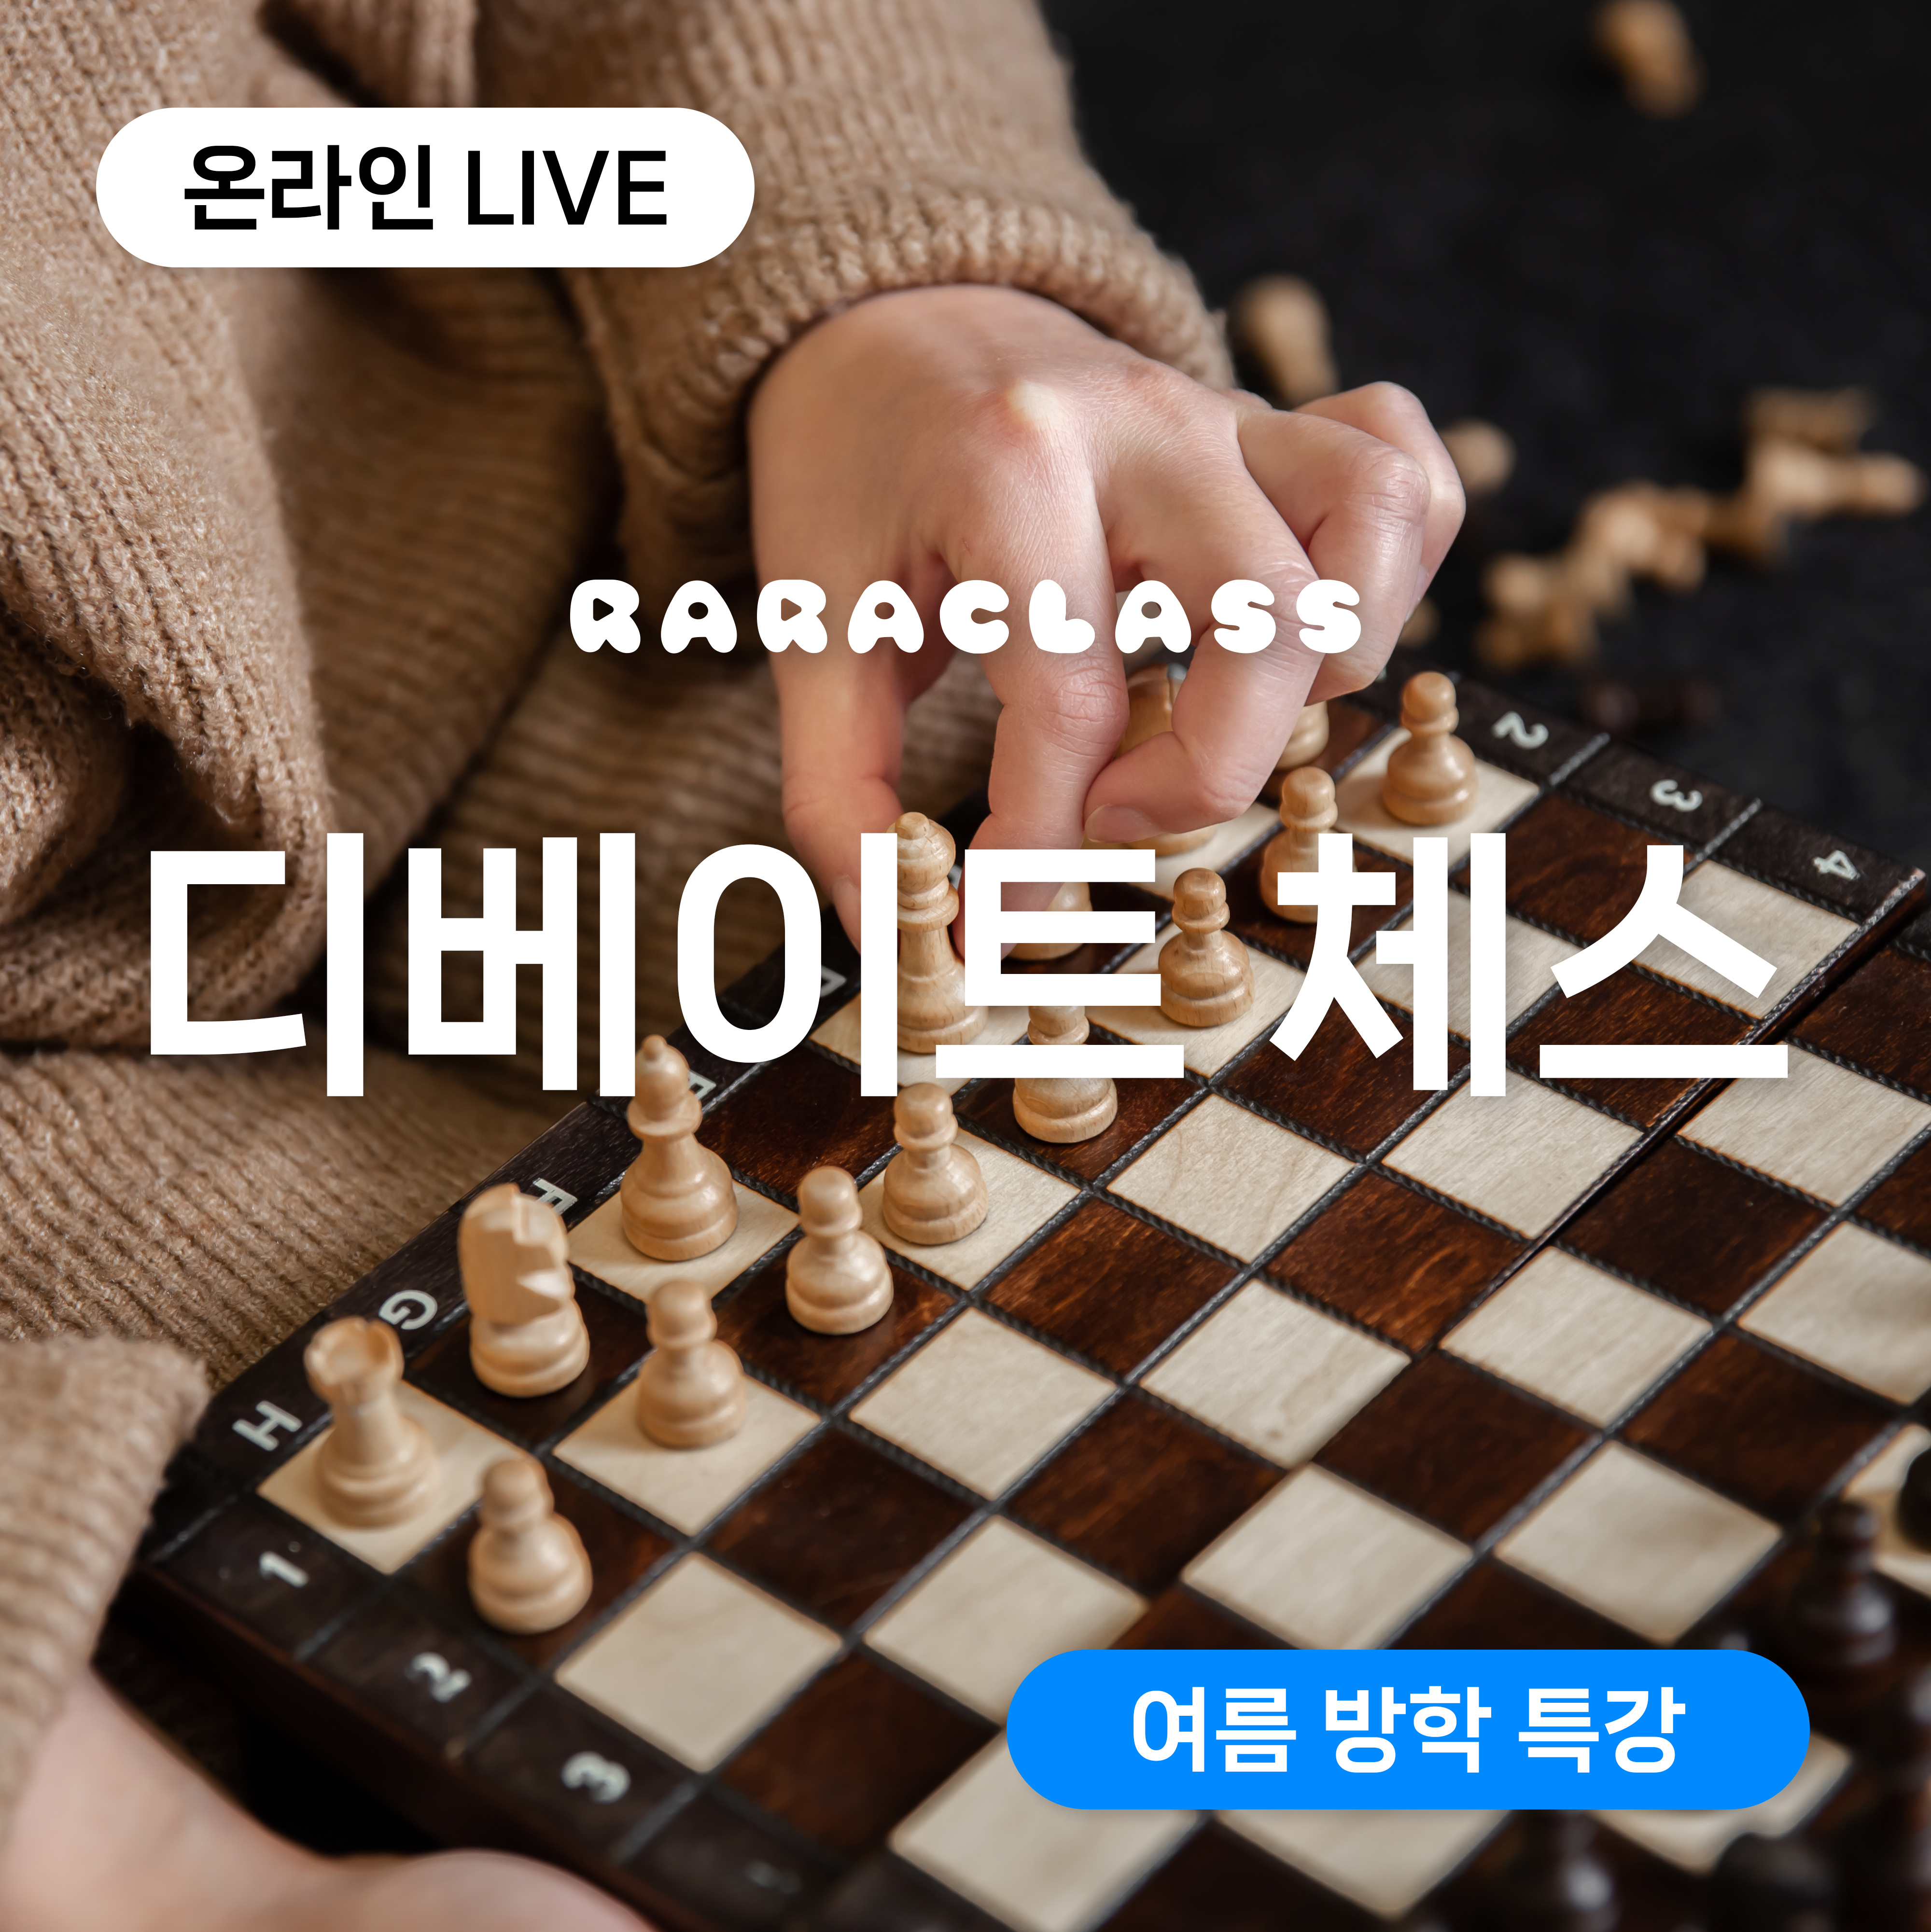 체스하며 토론! 정규 입문 디베이트 체스 (온라인 Live수업)